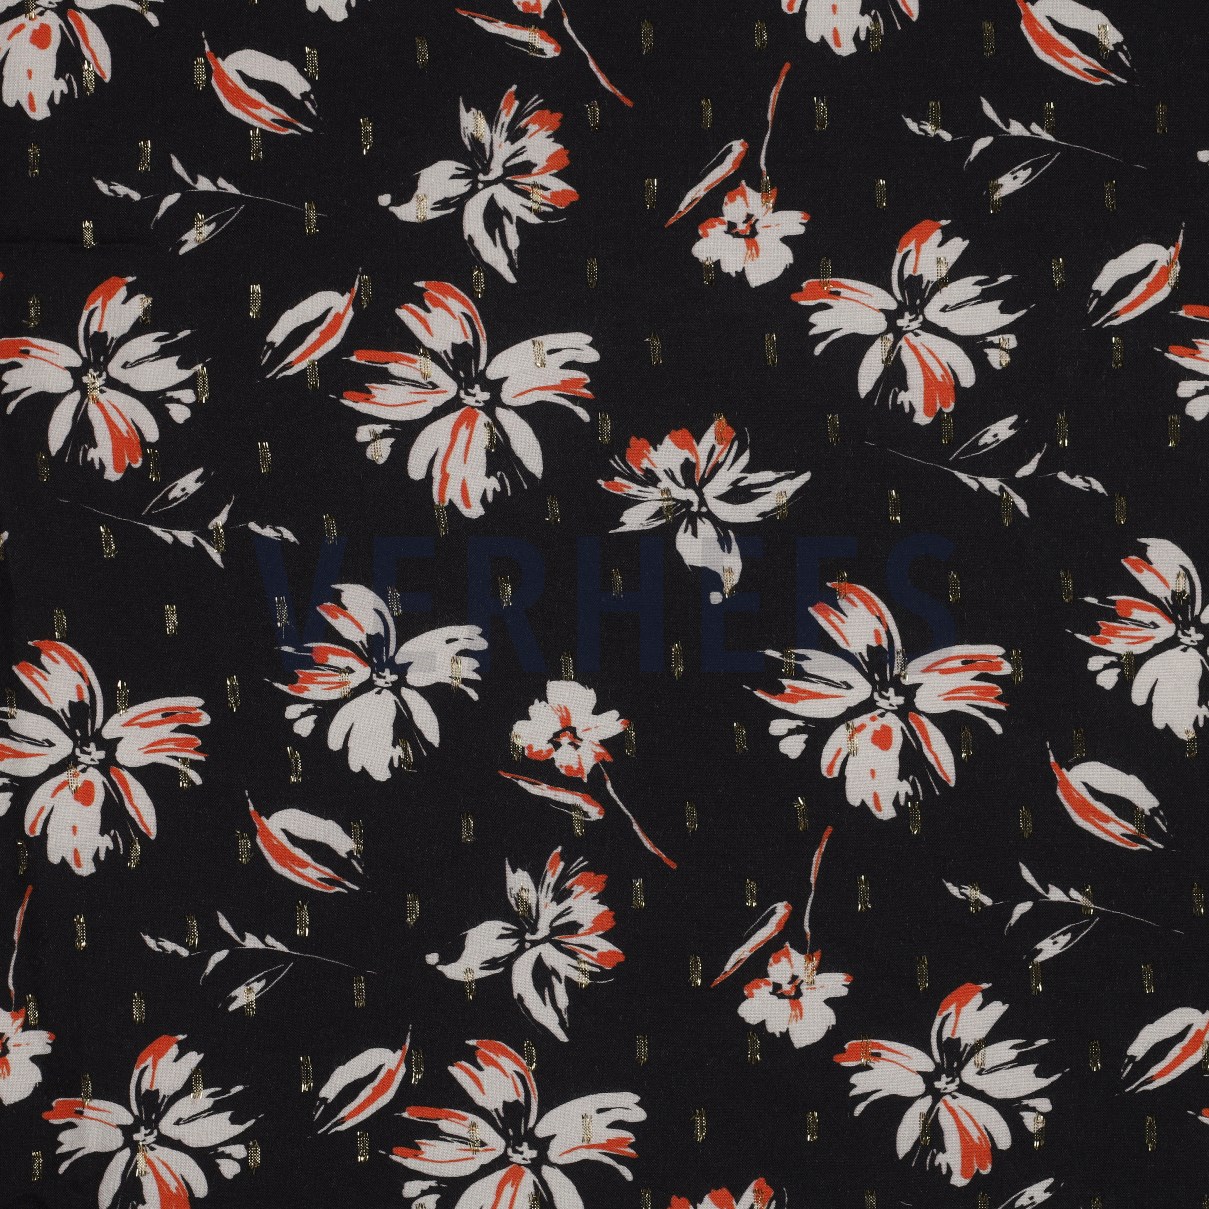 VISCOSE LUREX FLOWERS BLACK (high resolution)